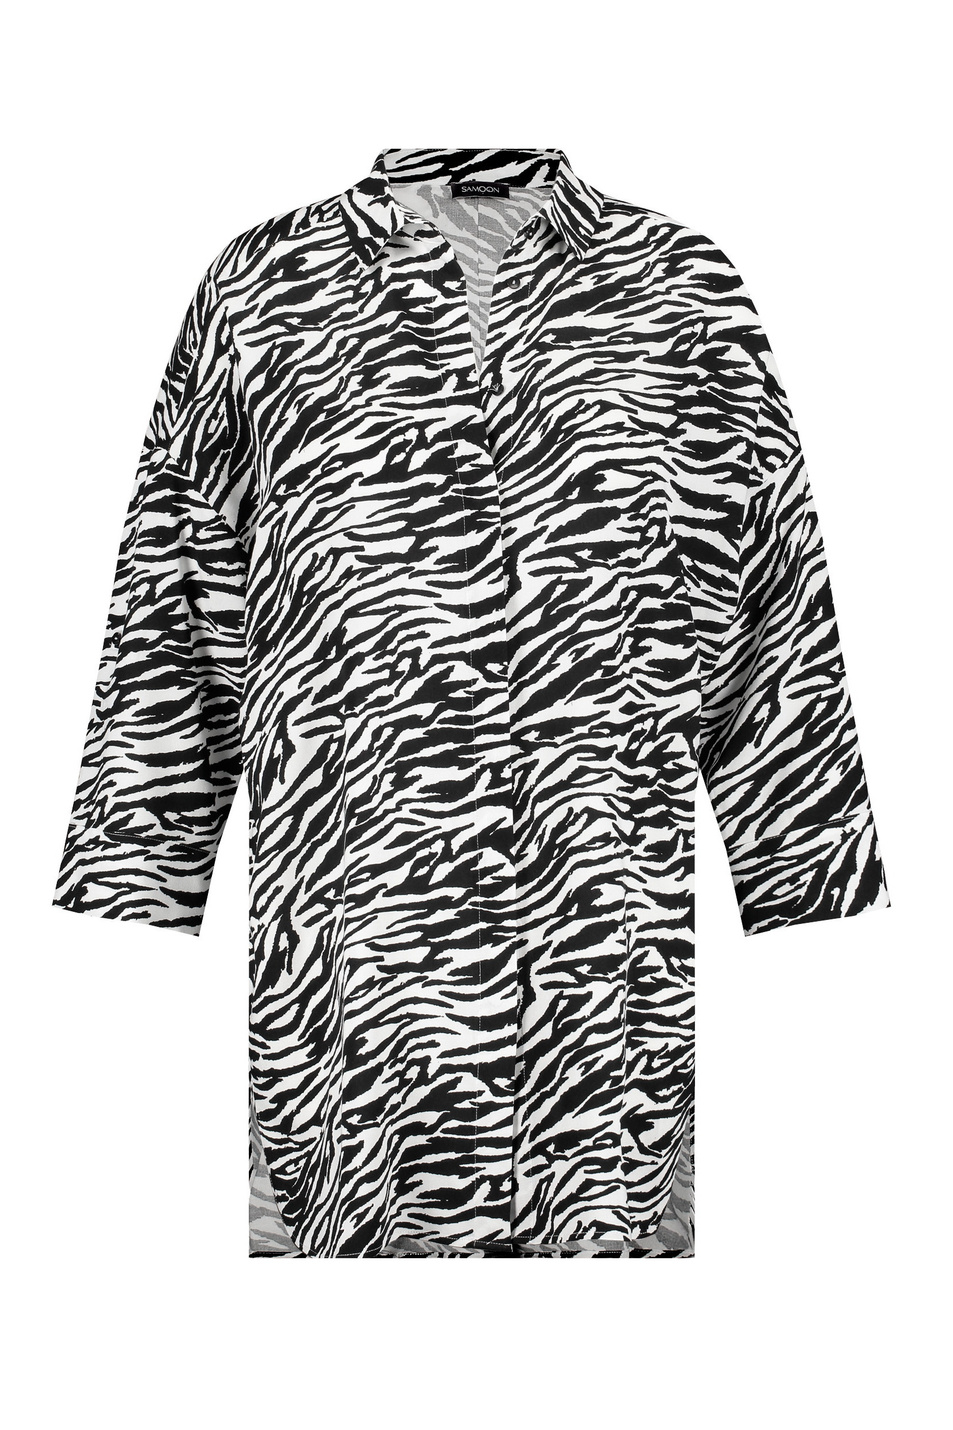 Samoon Удлиненная блузка с принтом под зебру (цвет ), артикул 660409-21018 | Фото 1